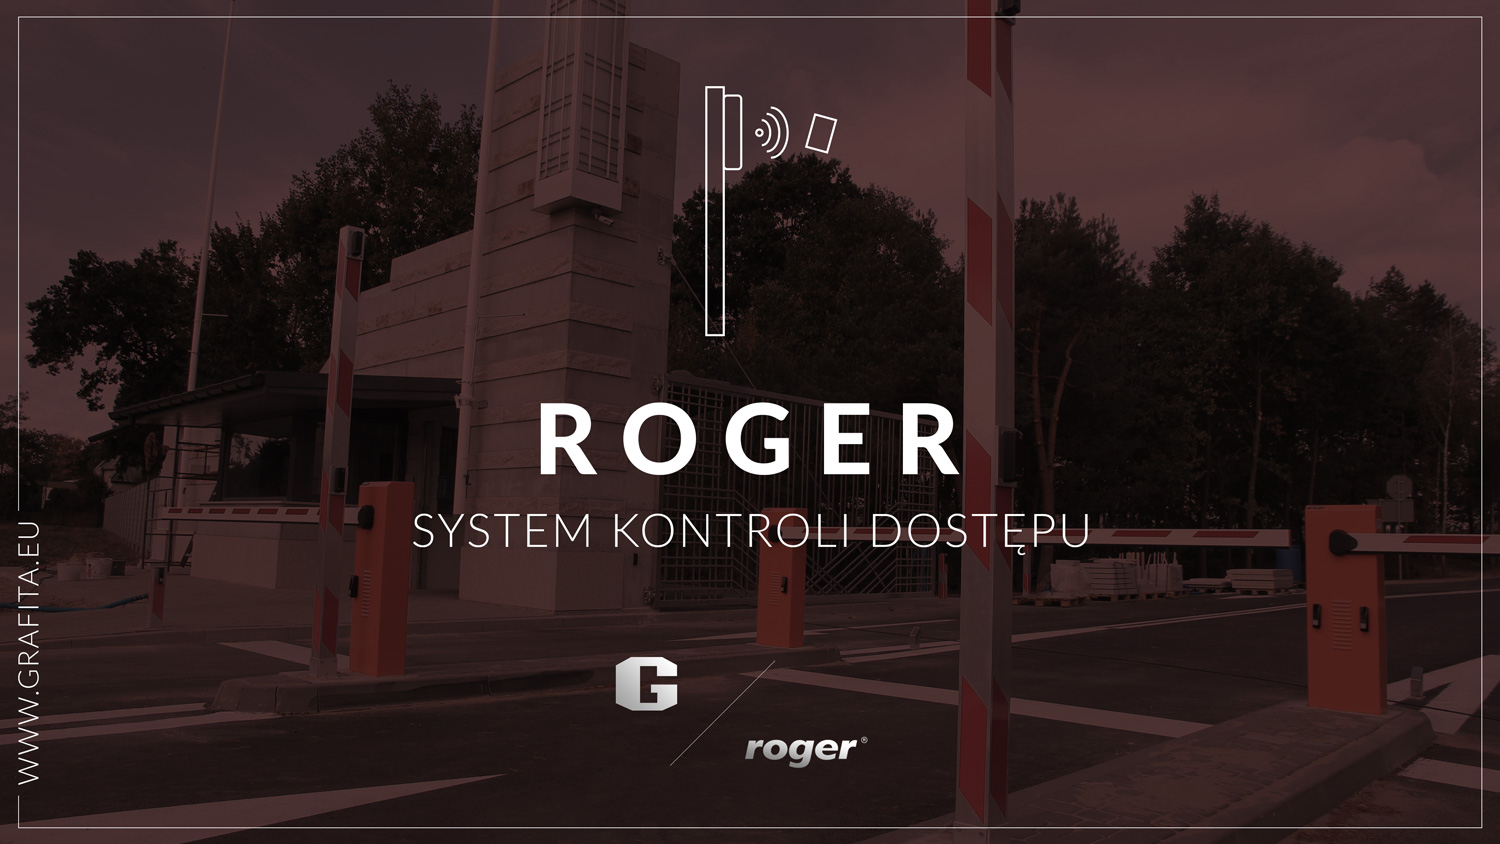 parkingowy system kontroli dostępu ROGER